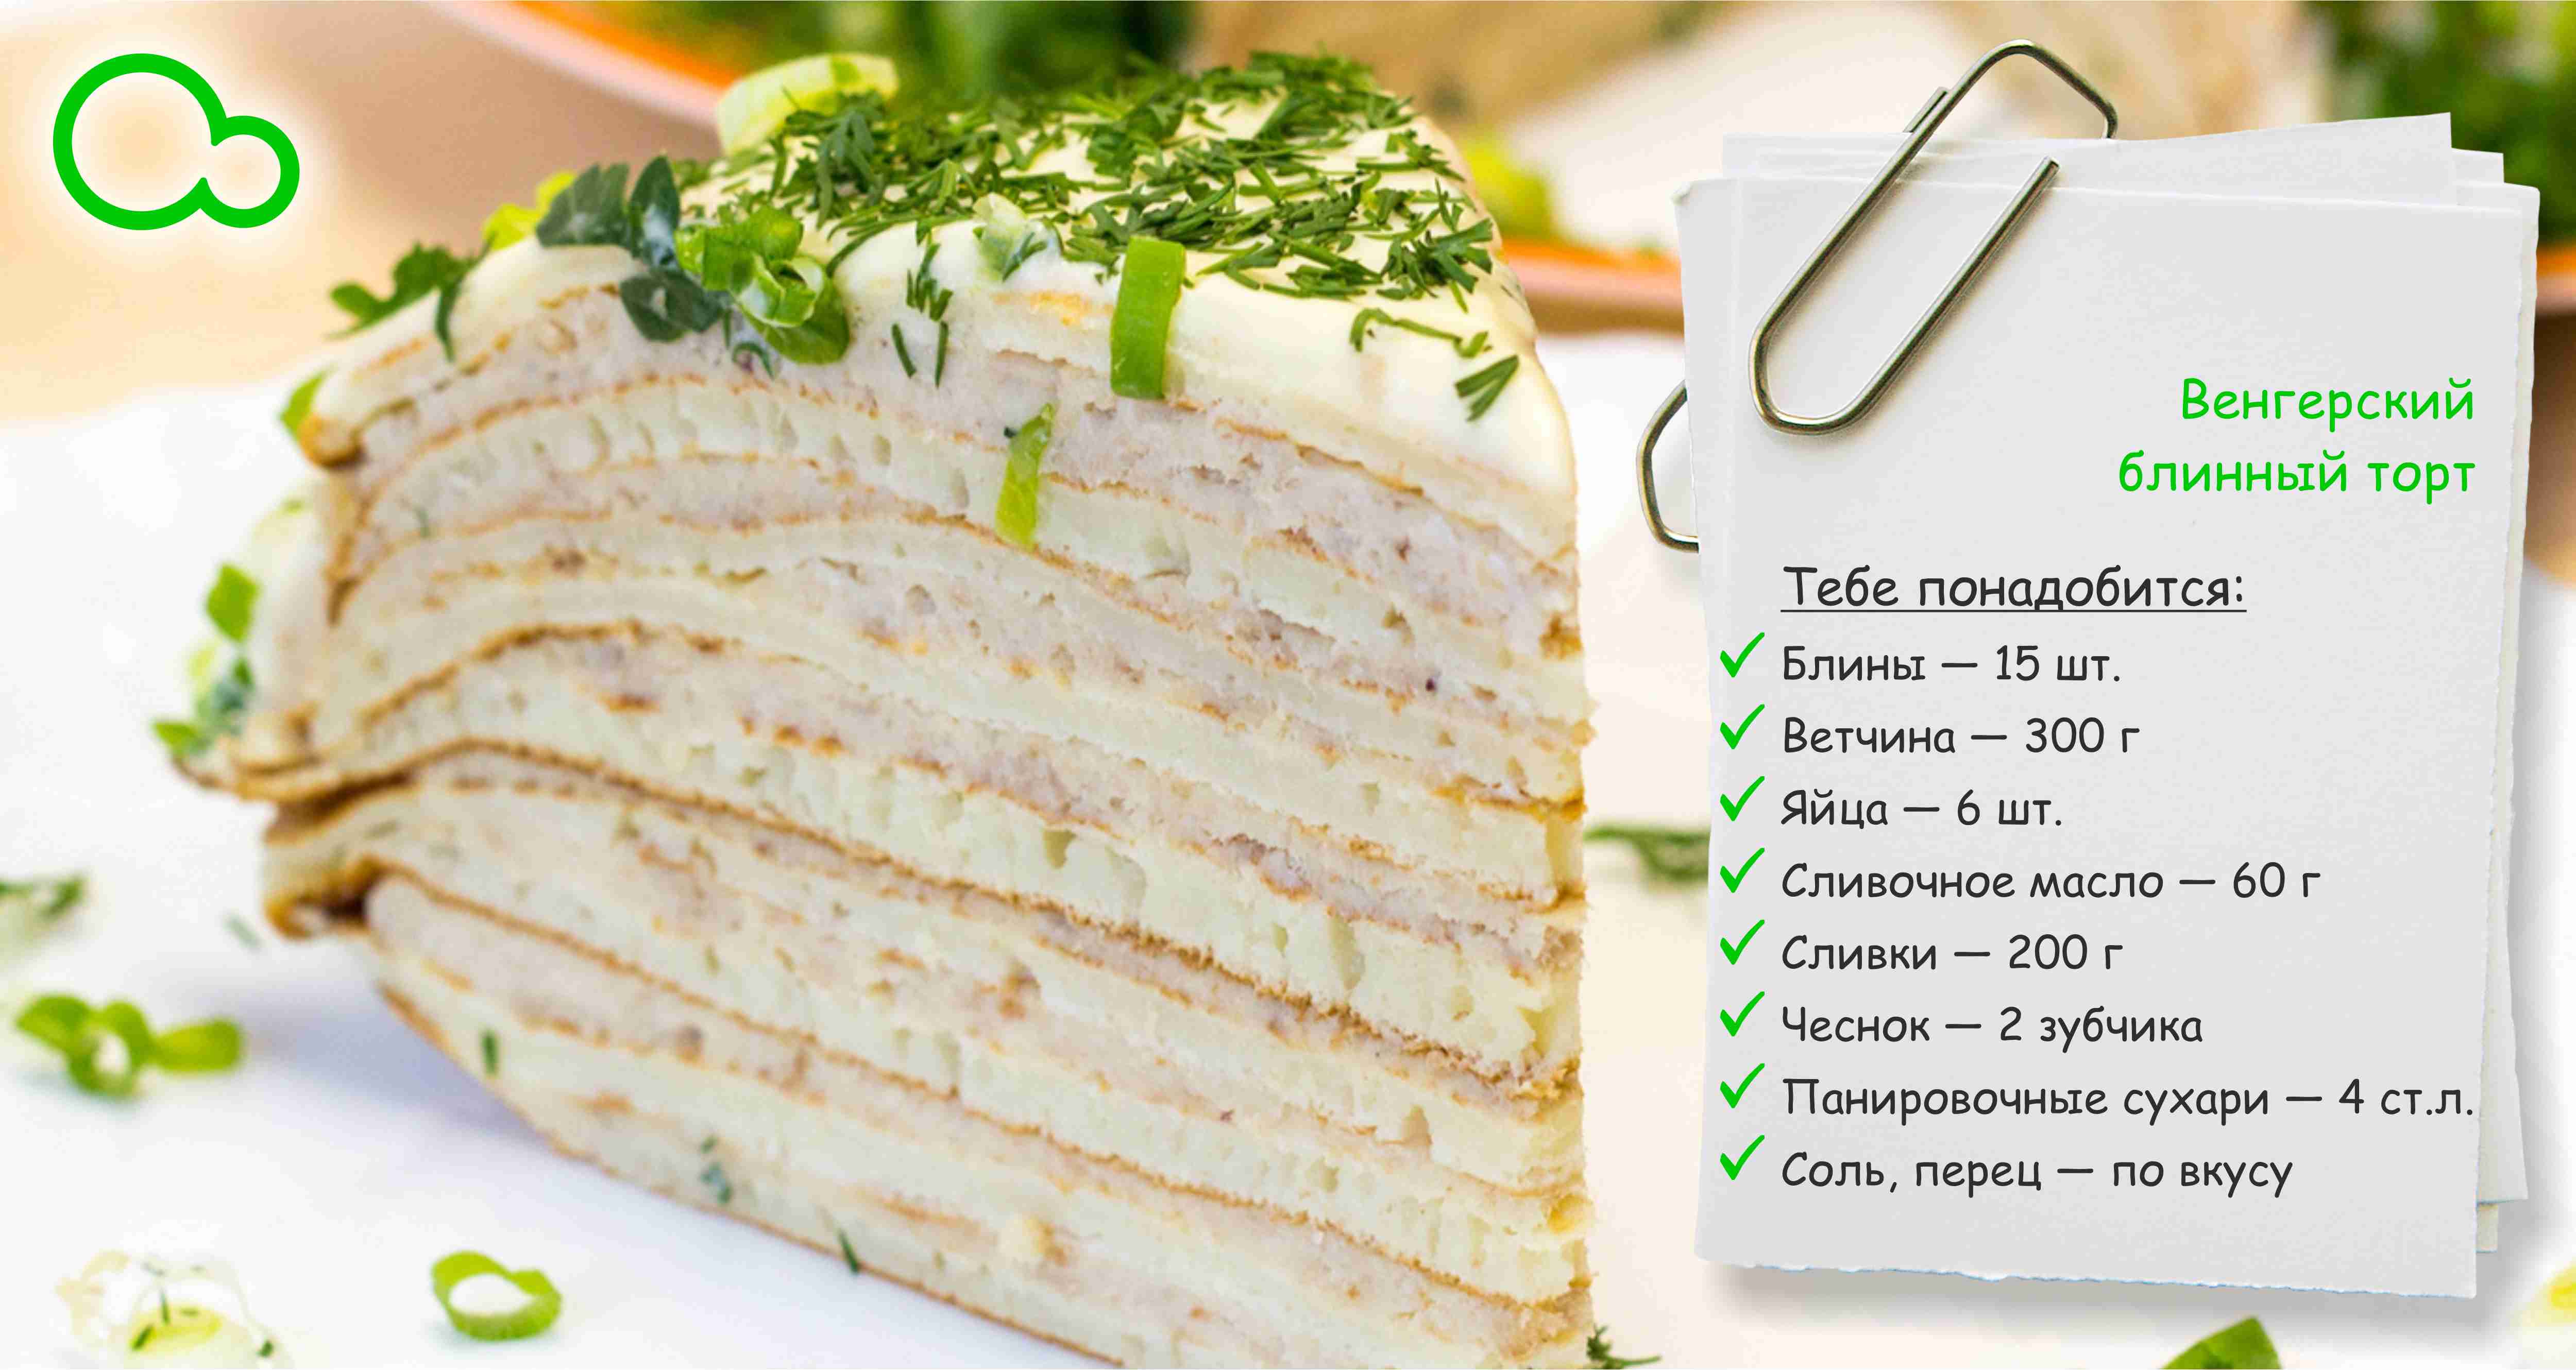 Рецепт блинного торта с описанием